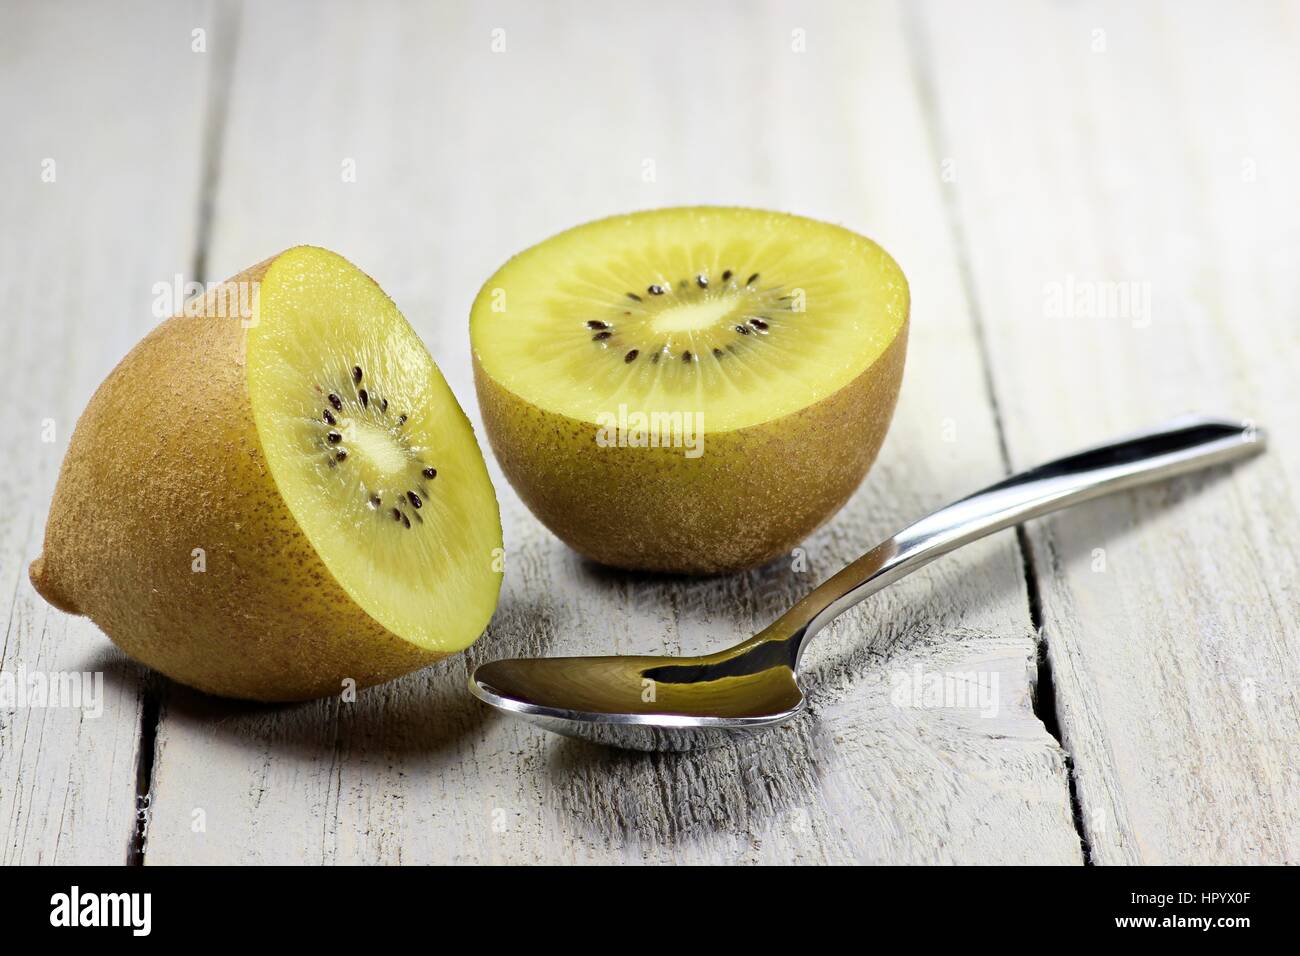 golden kiwifruit ion wooden background Stock Photo